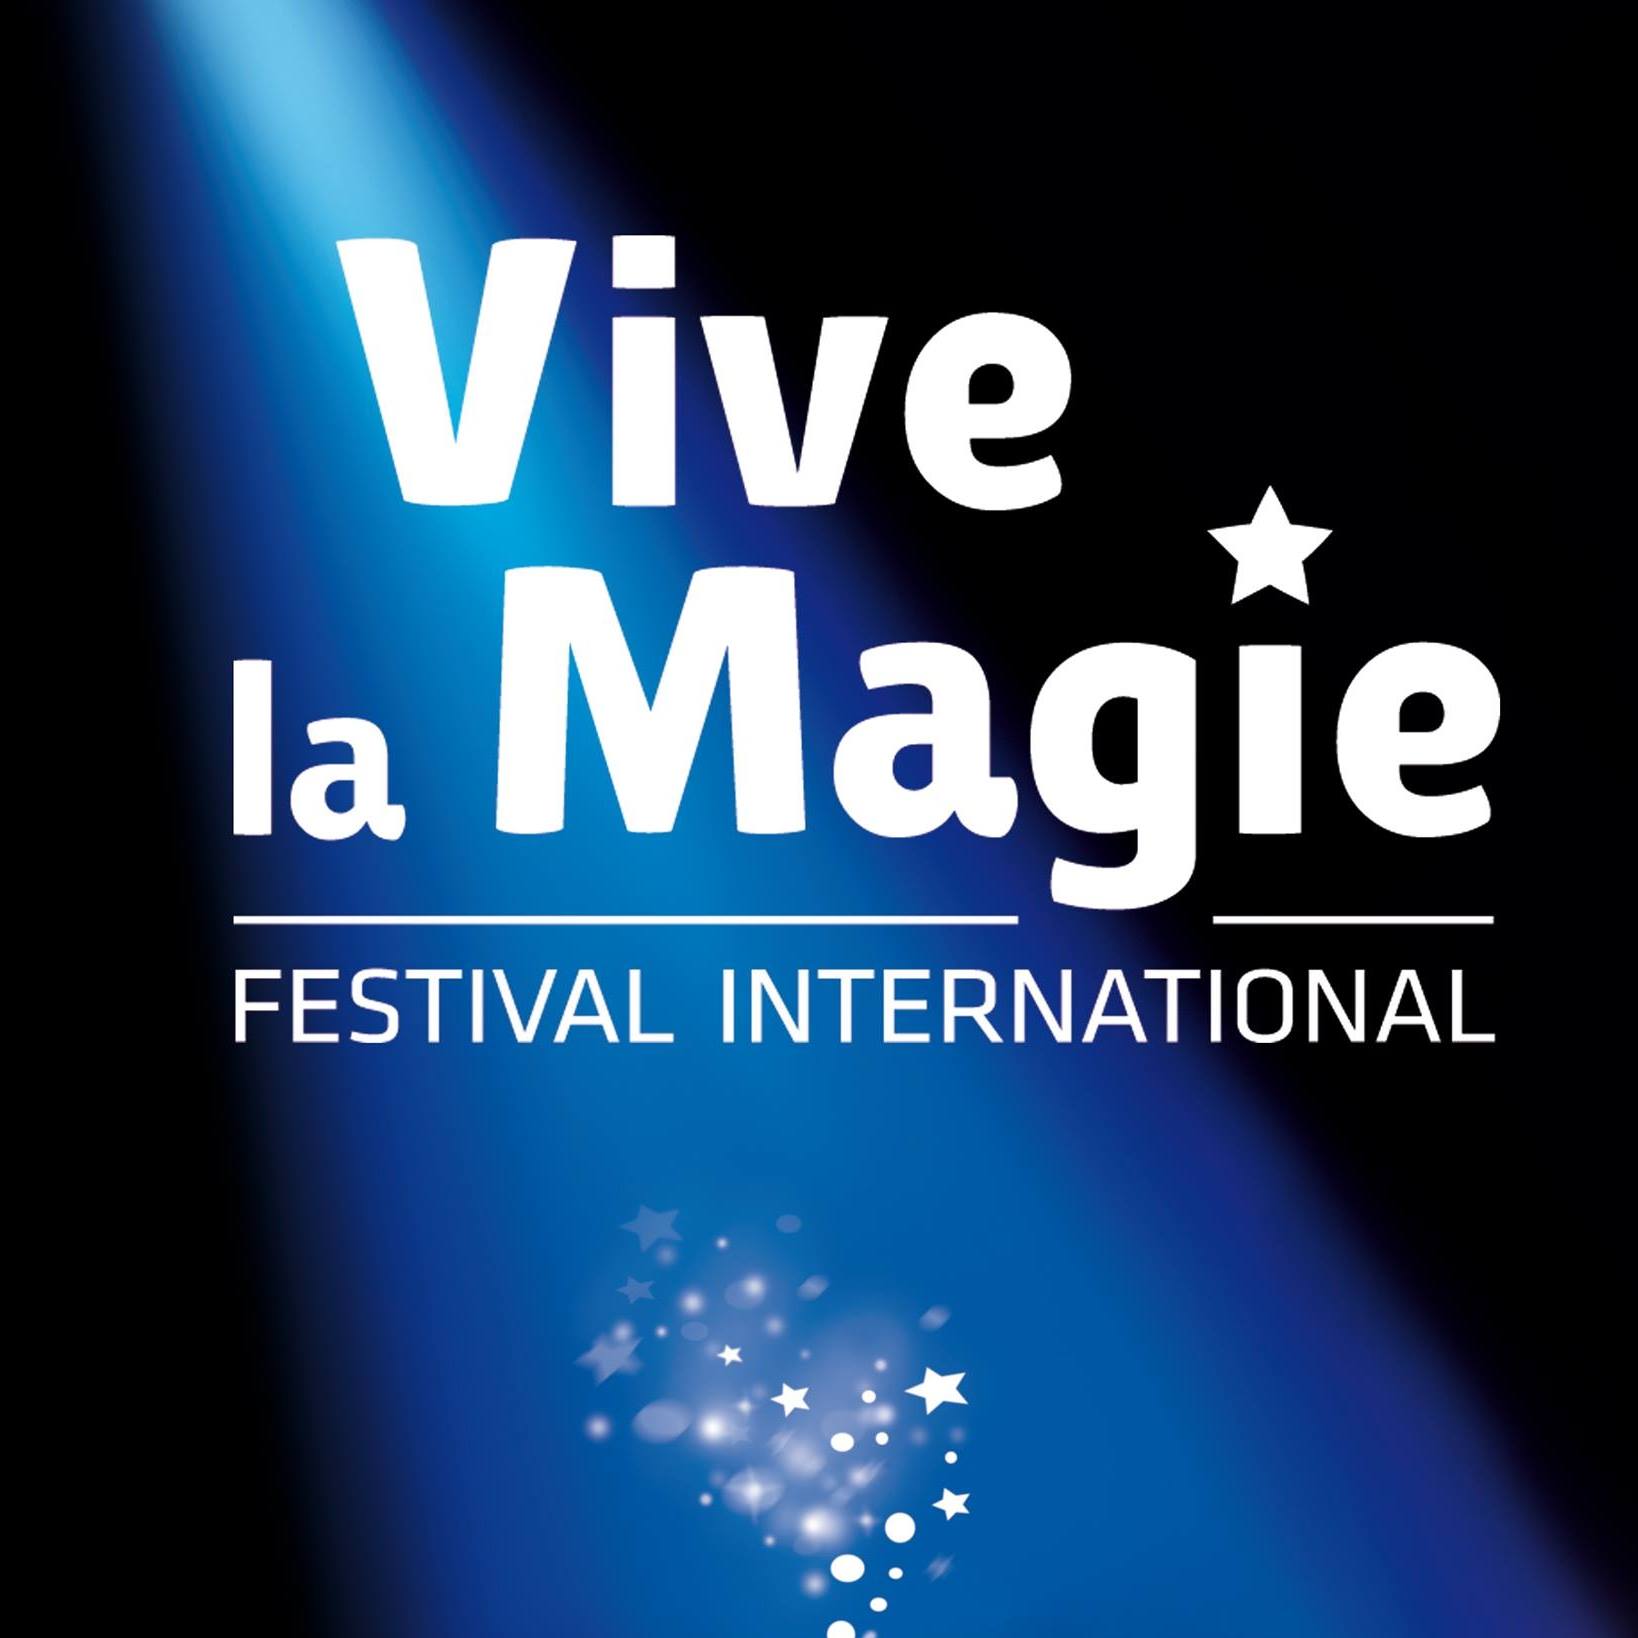 Festival International Vive La Magie 16ieme Edition in der Les Angenoises Tickets